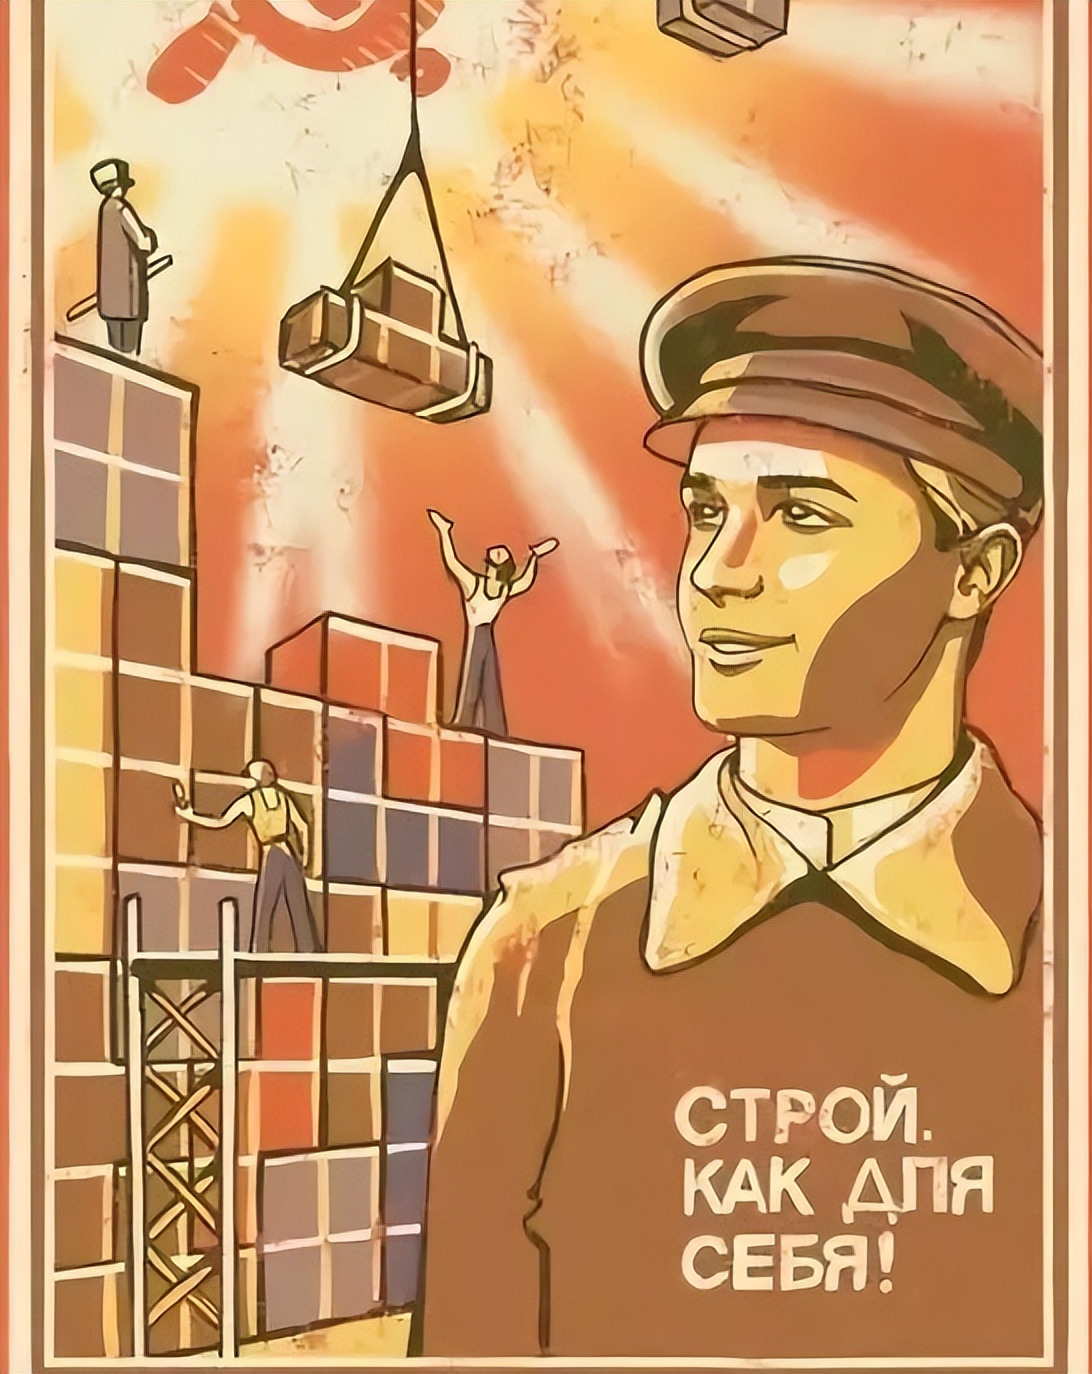 俄罗斯方块，为何风靡全球！